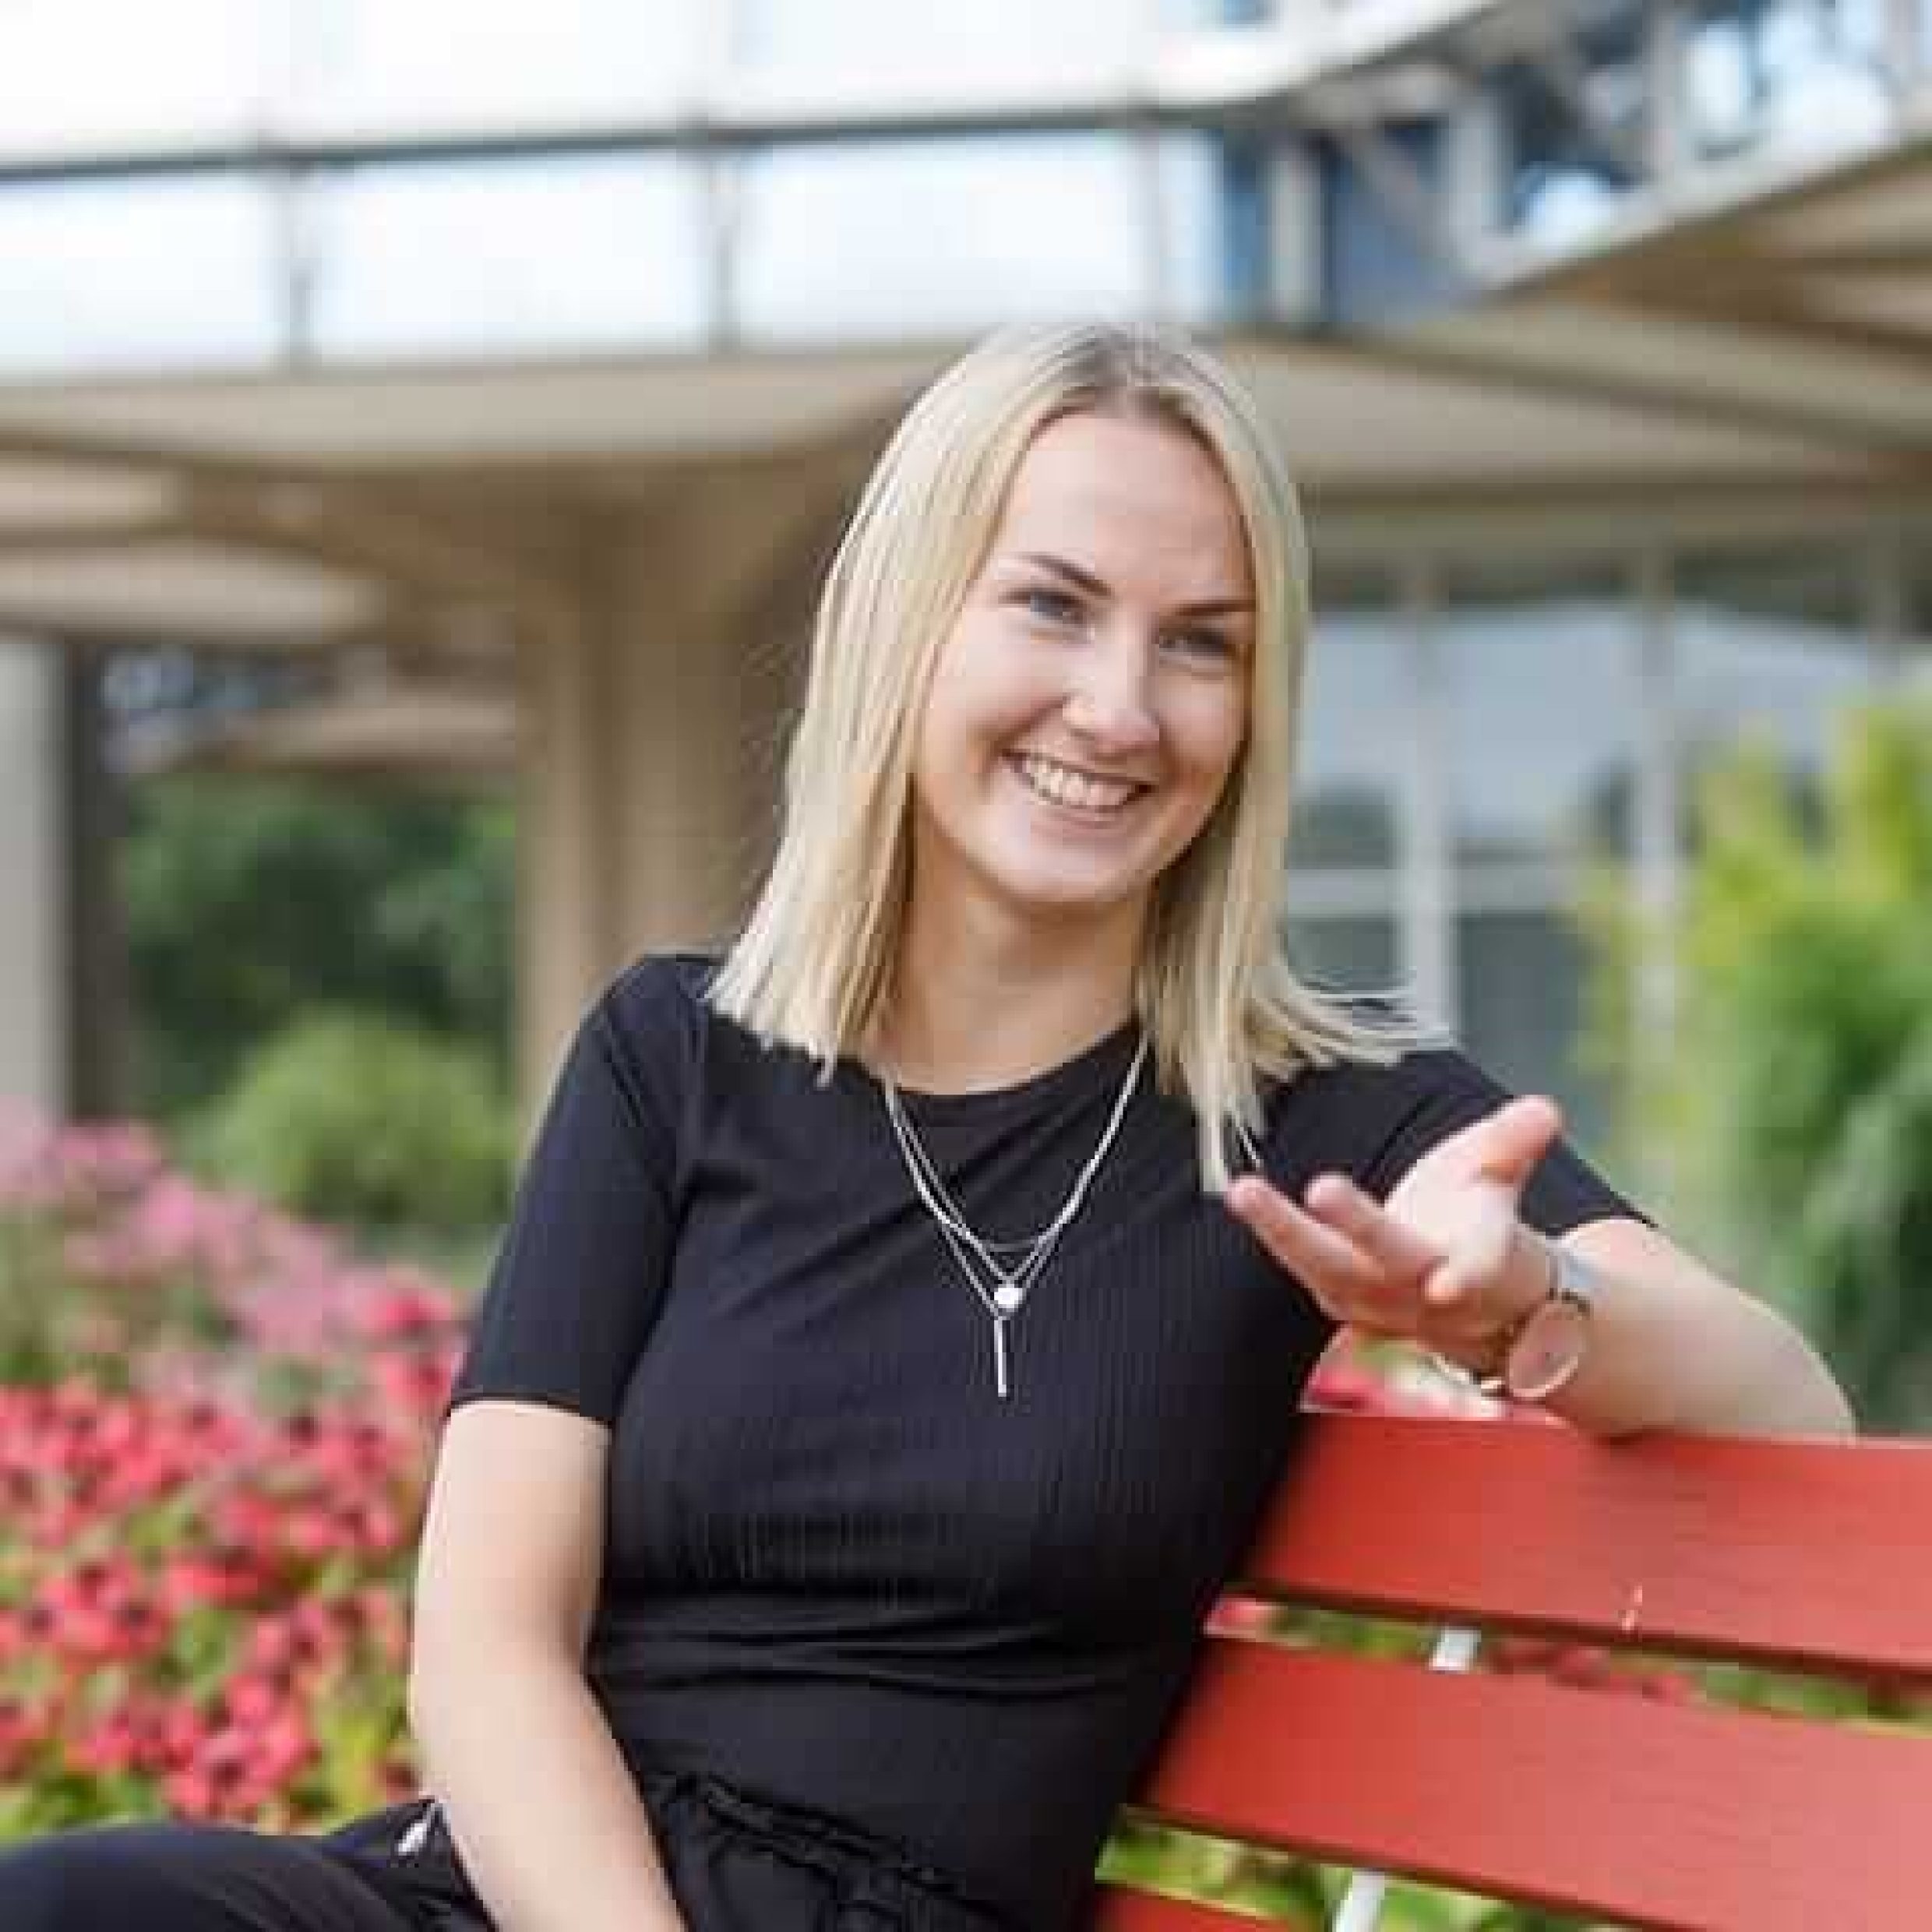 Humans of Responsibility: Svenja Schroeder sitzt auf einer Bank und lacht